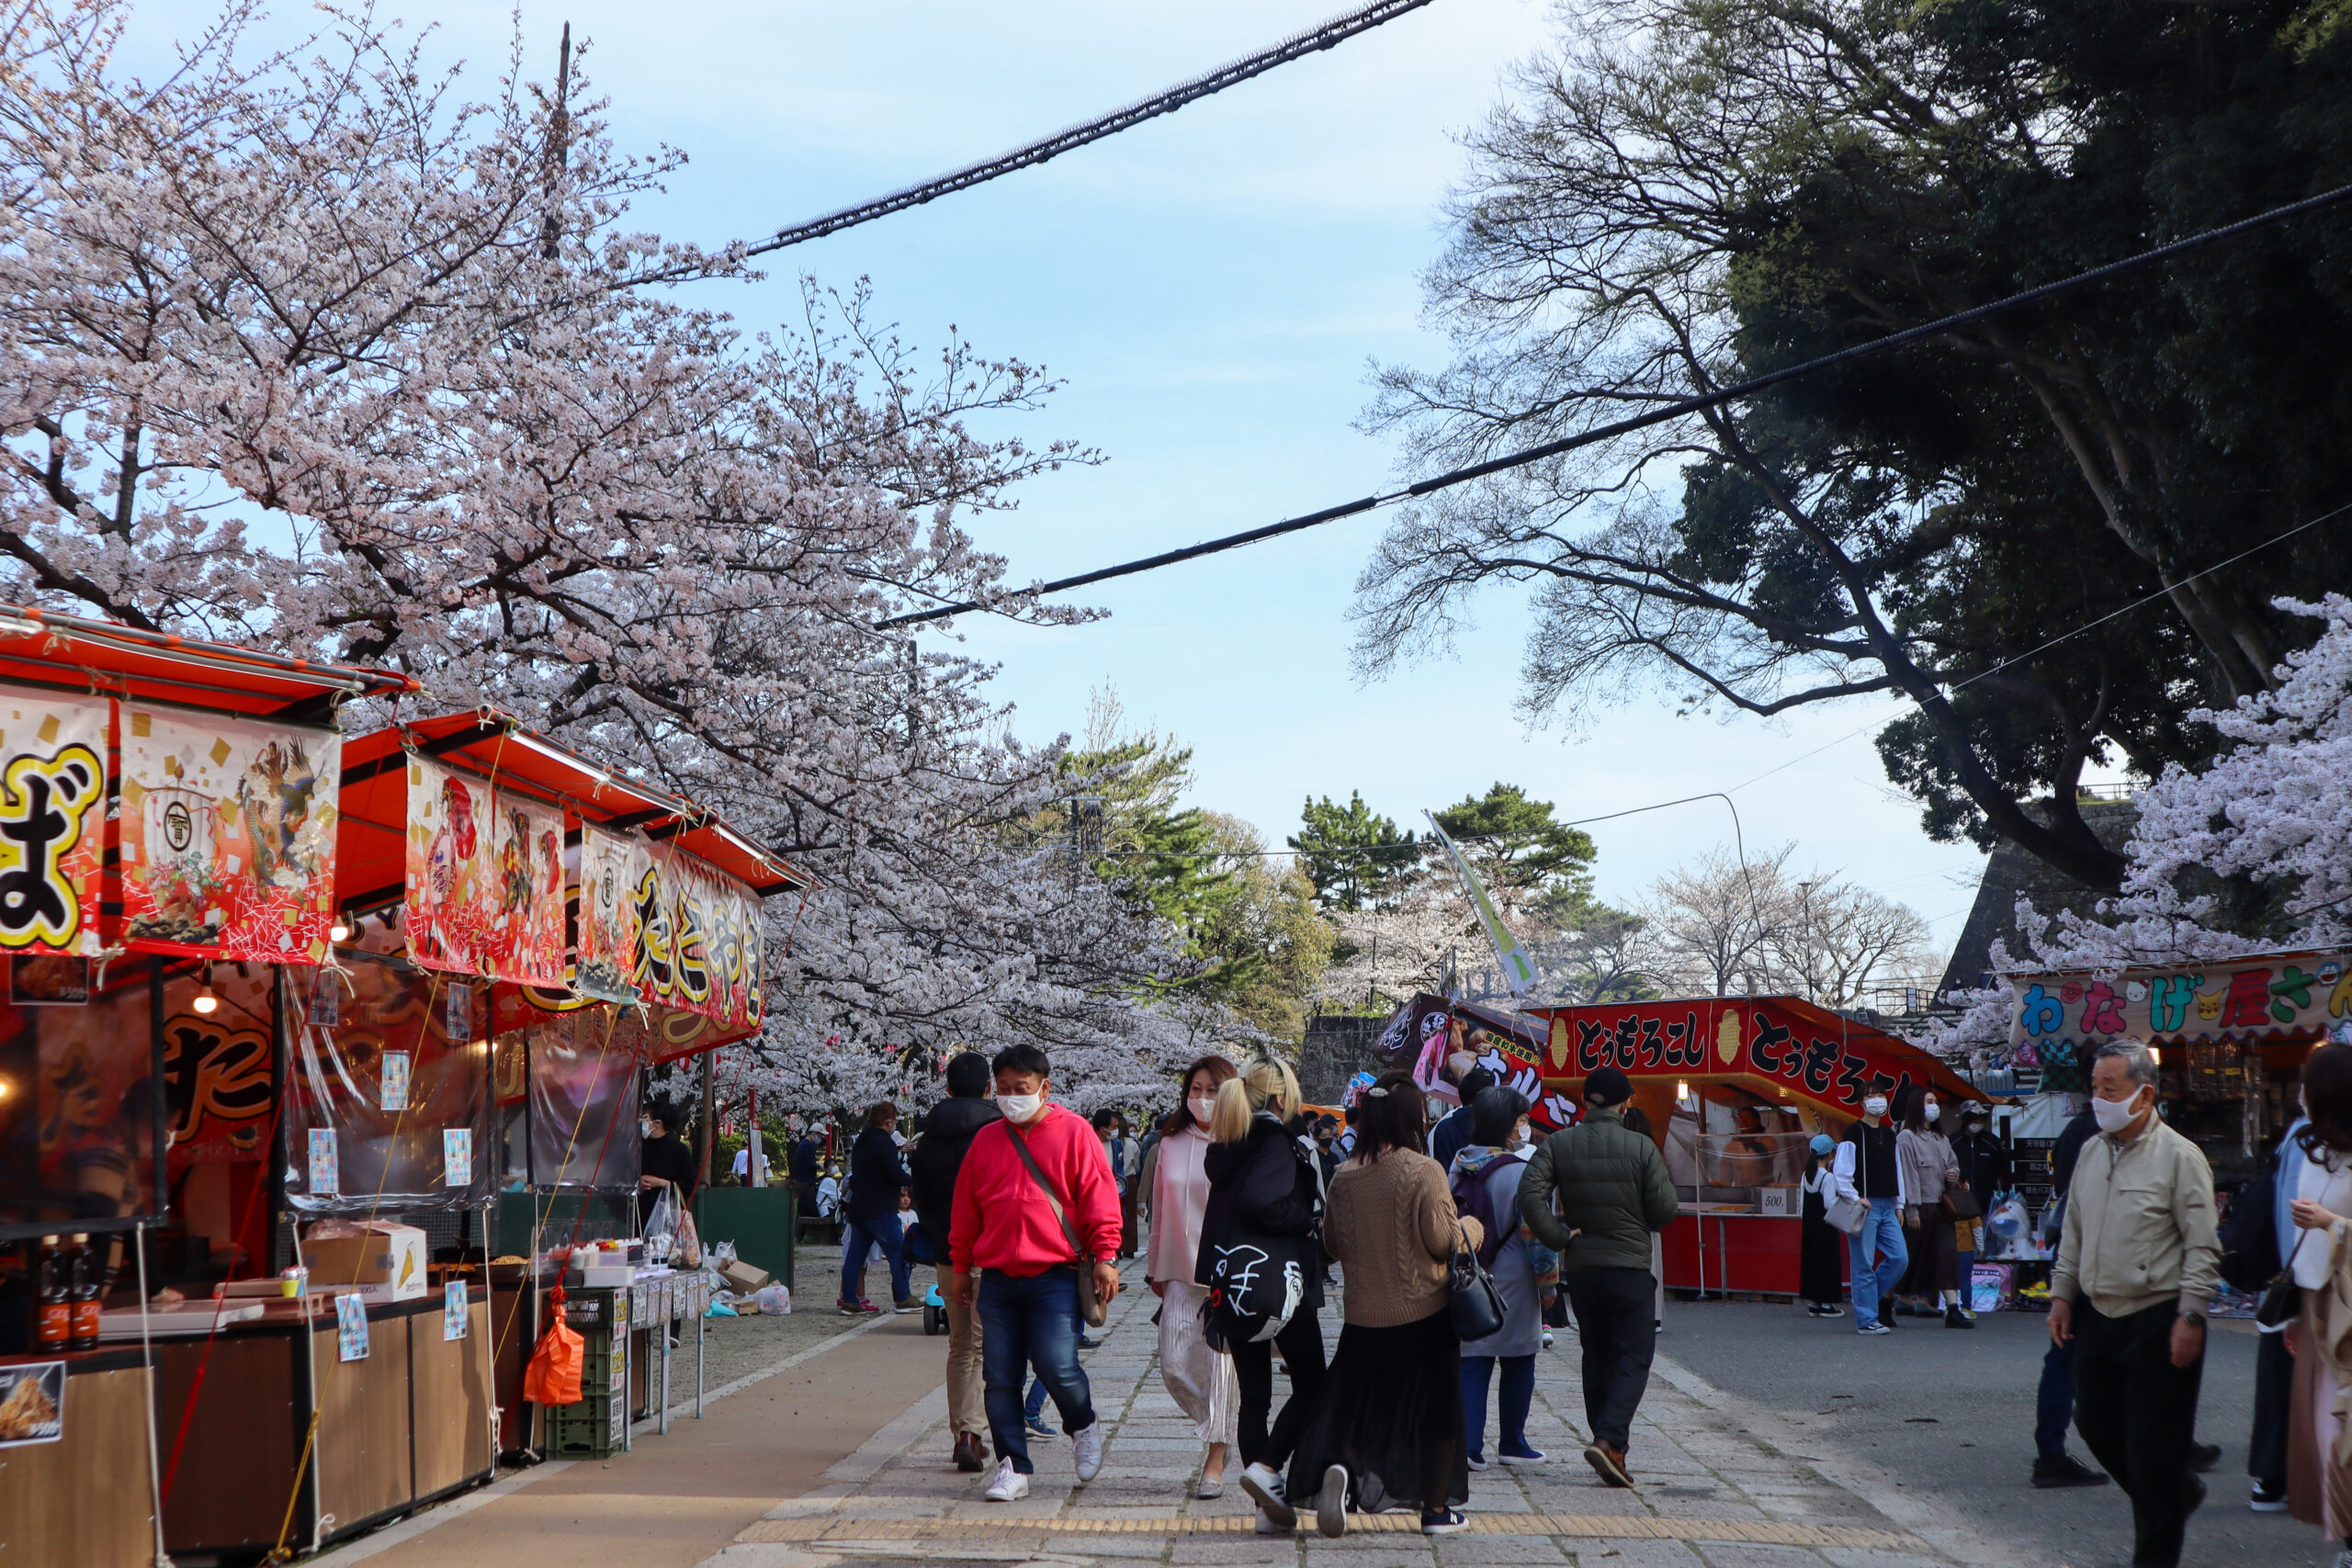 和歌山城では春に桜まつりが行われ、多くの観光客で賑わいます。